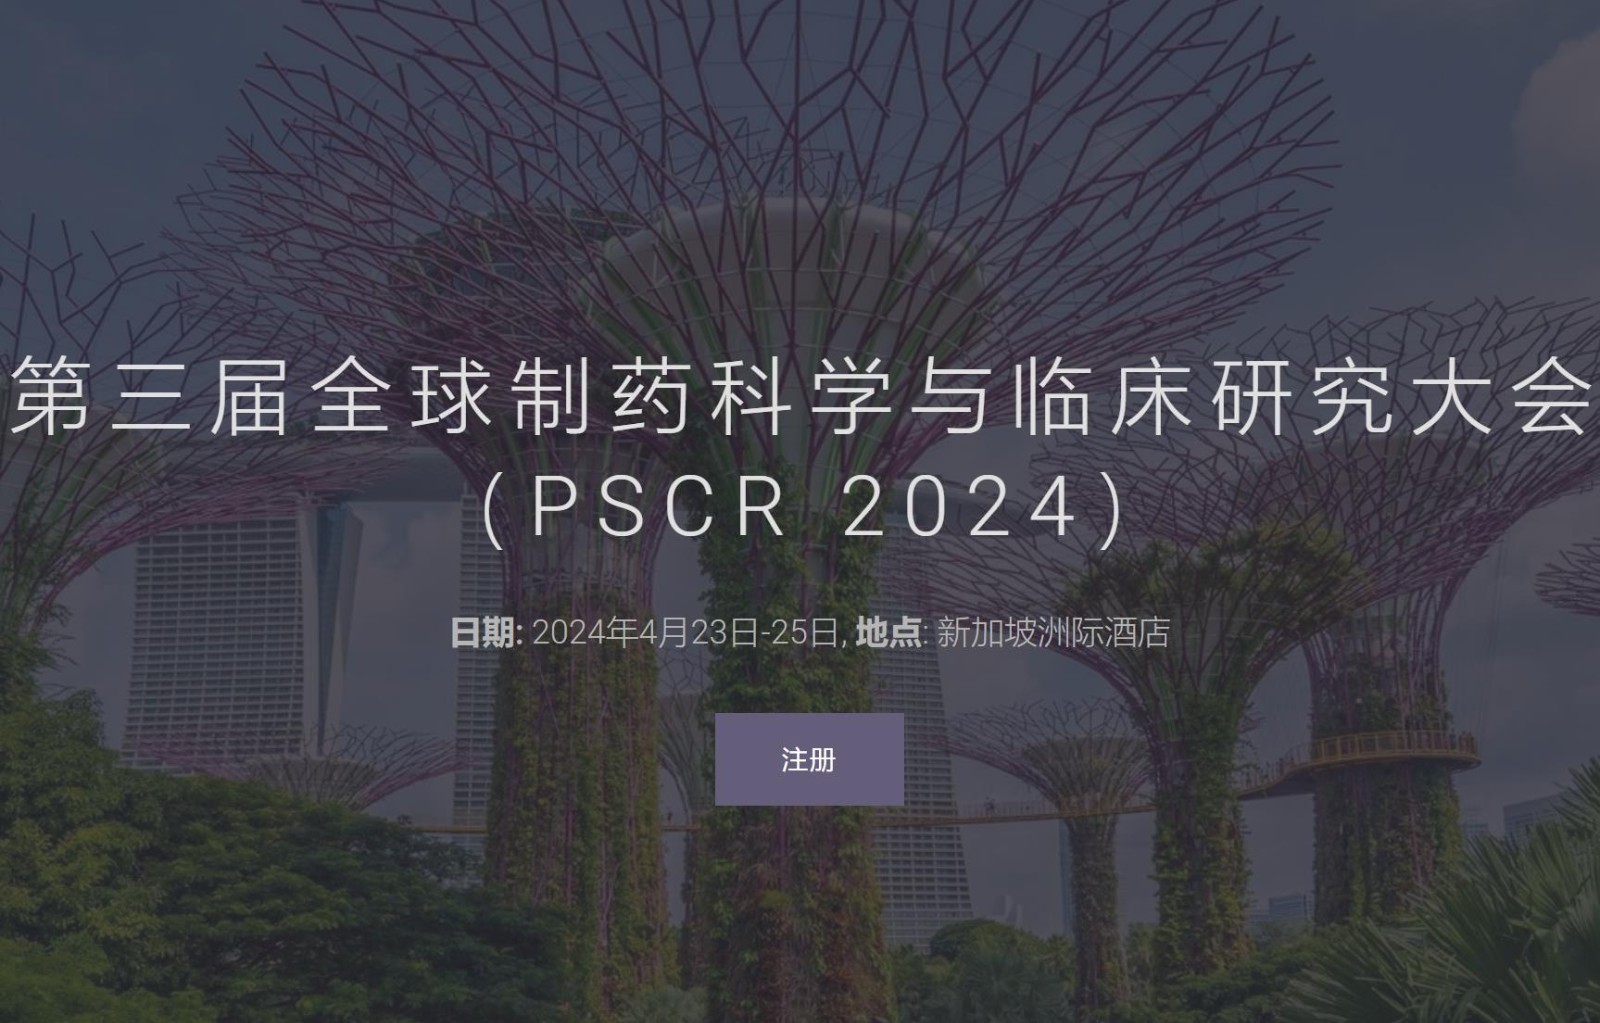 第三届全球制药科学与临床研究大会（PSCR 2024）